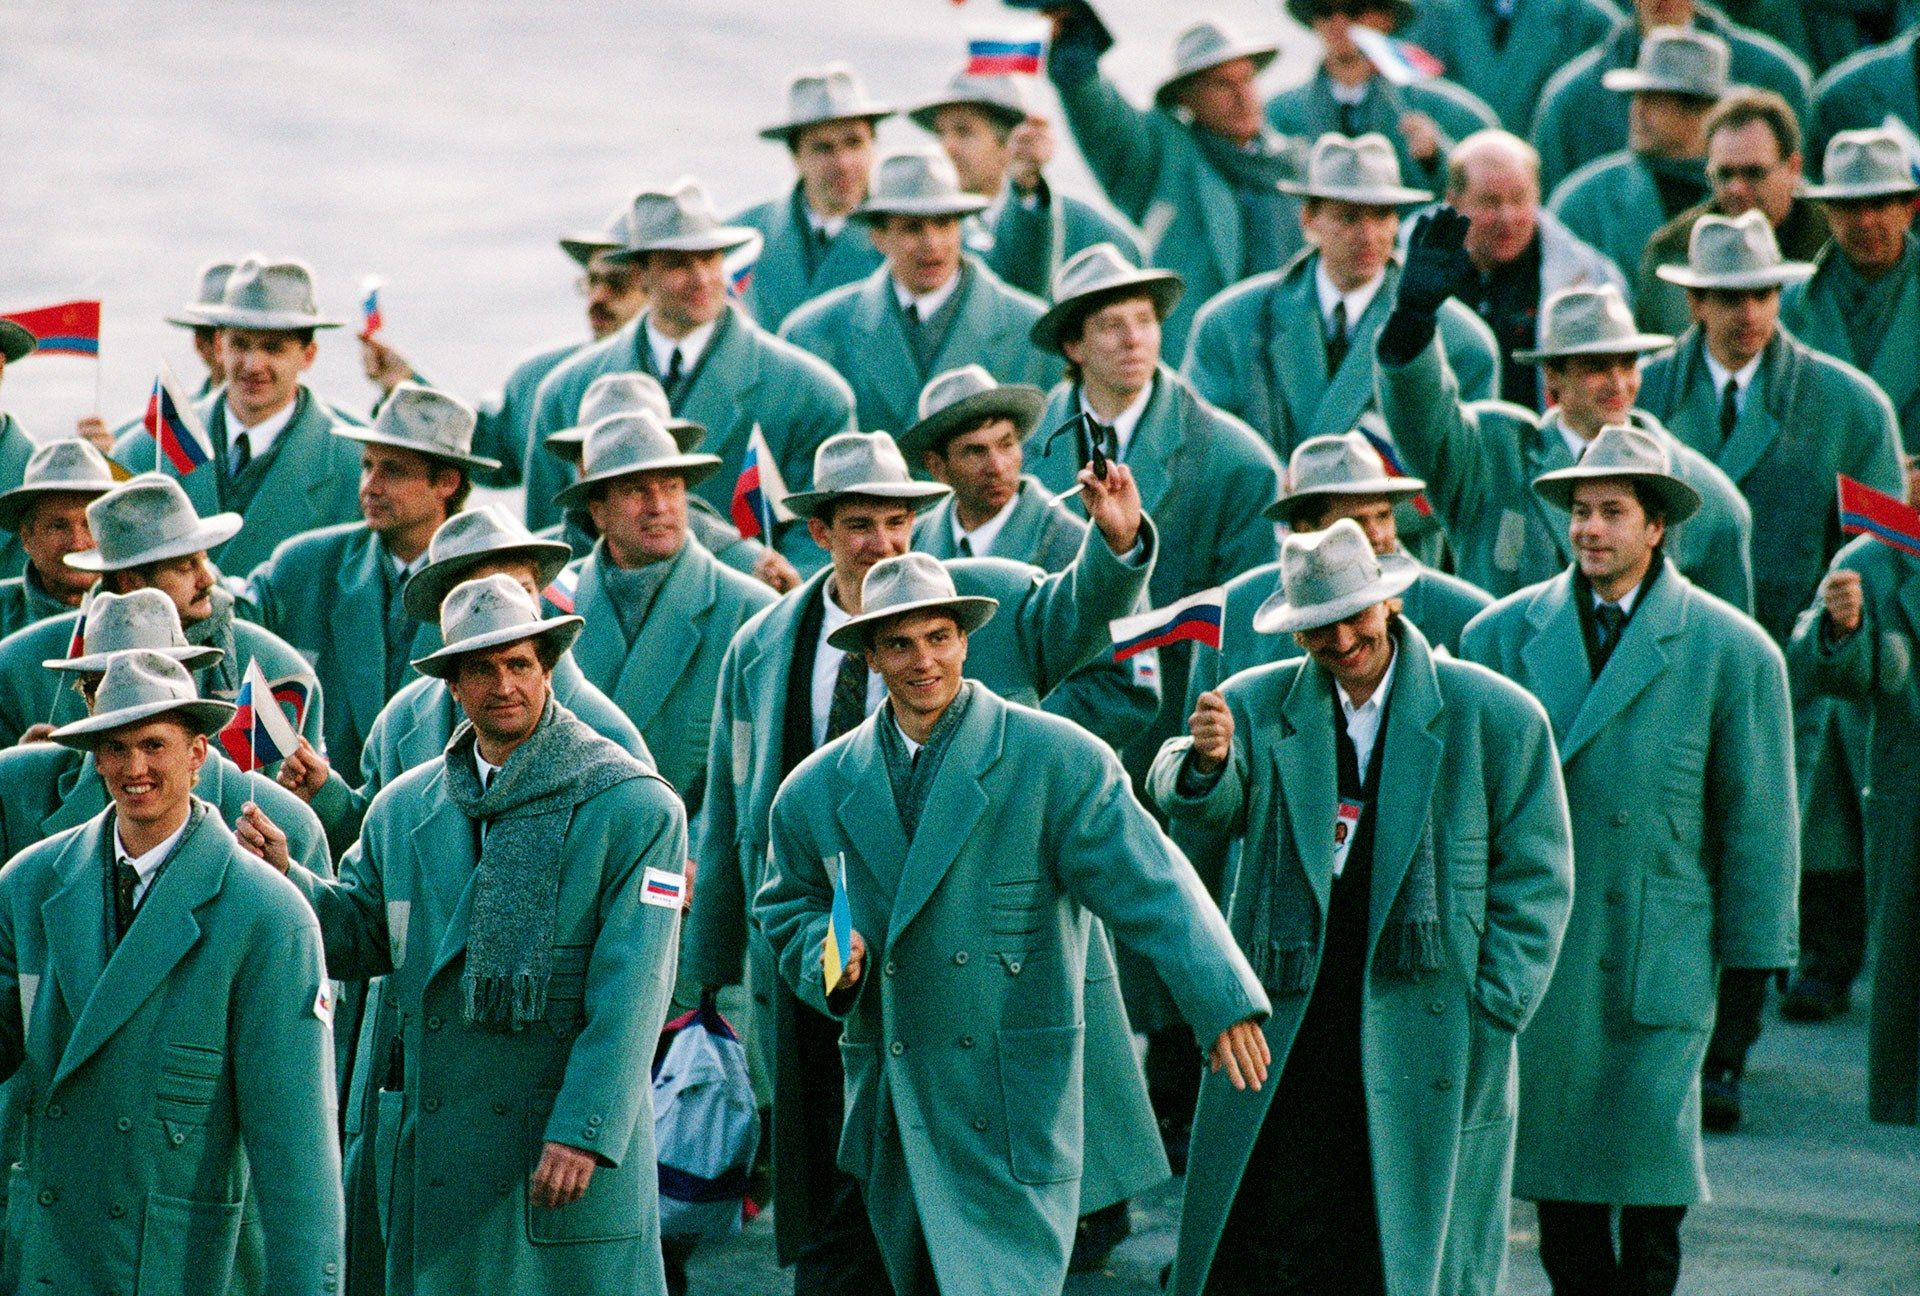 1920x1296, 629 Kb / Российская сборная, Олимпийские игры, Альбервиль, шляпа, пальто, шарф, флаг